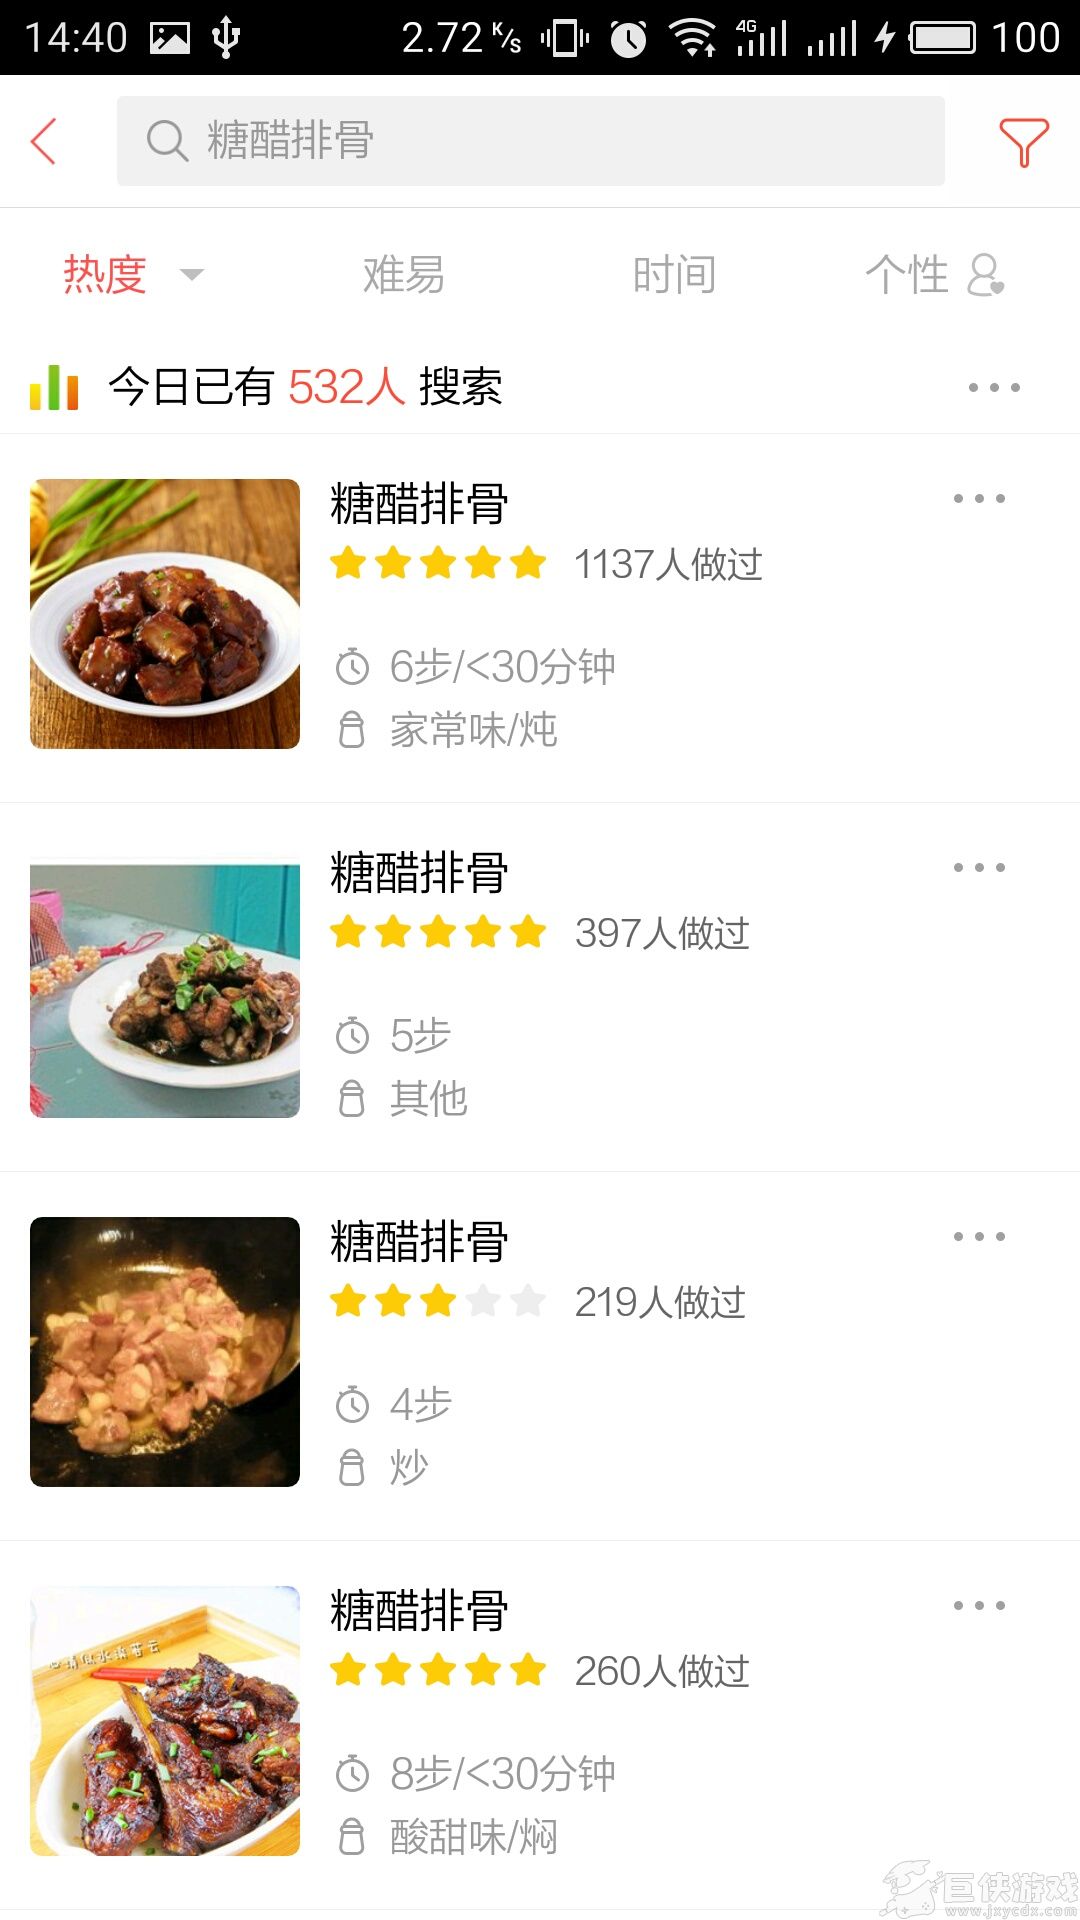 美食杰app下载官网版